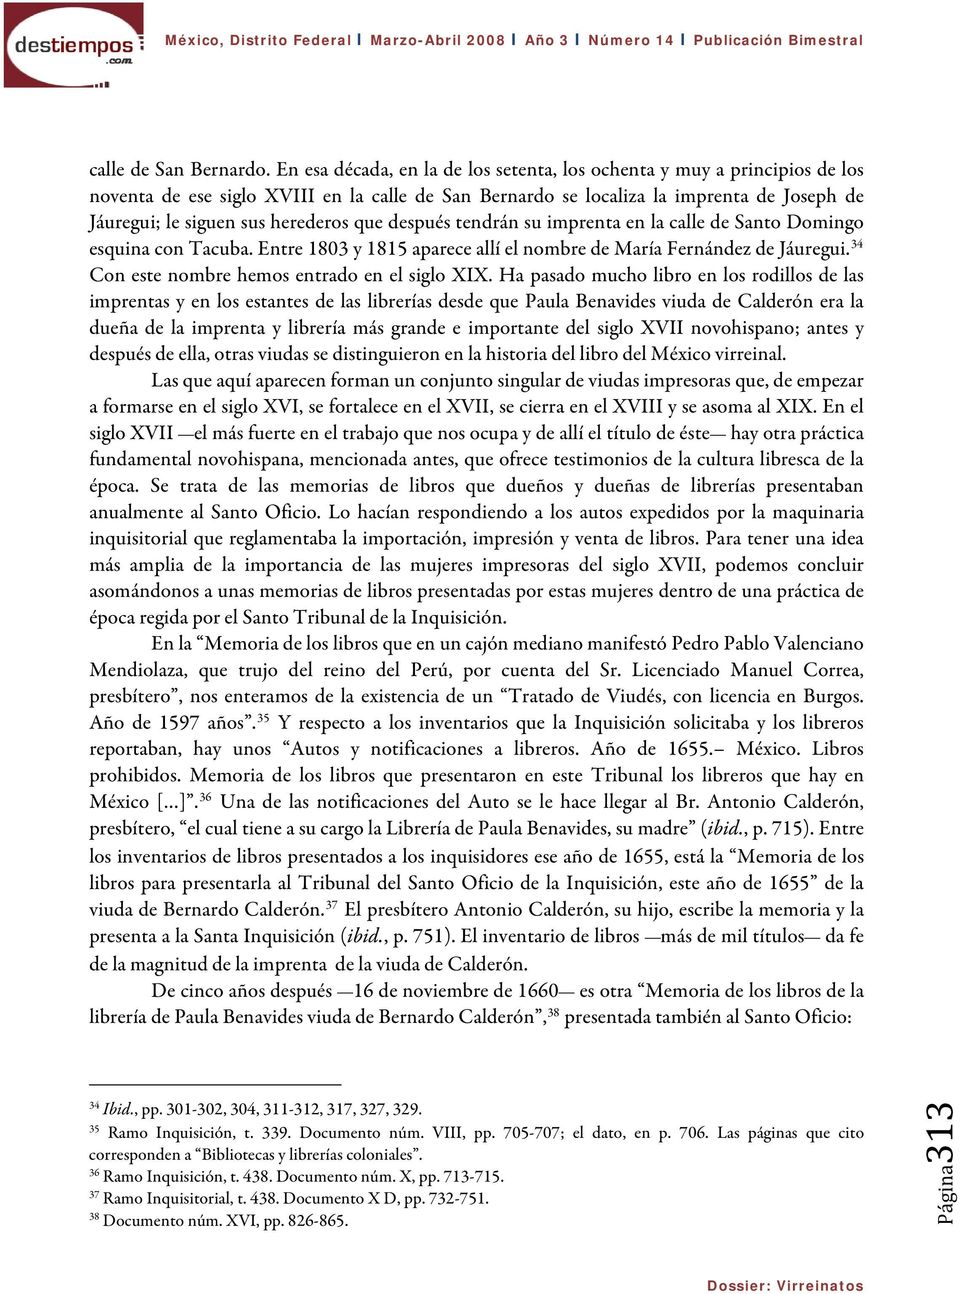 herederos que después tendrán su imprenta en la calle de Santo Domingo esquina con Tacuba. Entre 1803 y 1815 aparece allí el nombre de María Fernández de Jáuregui.